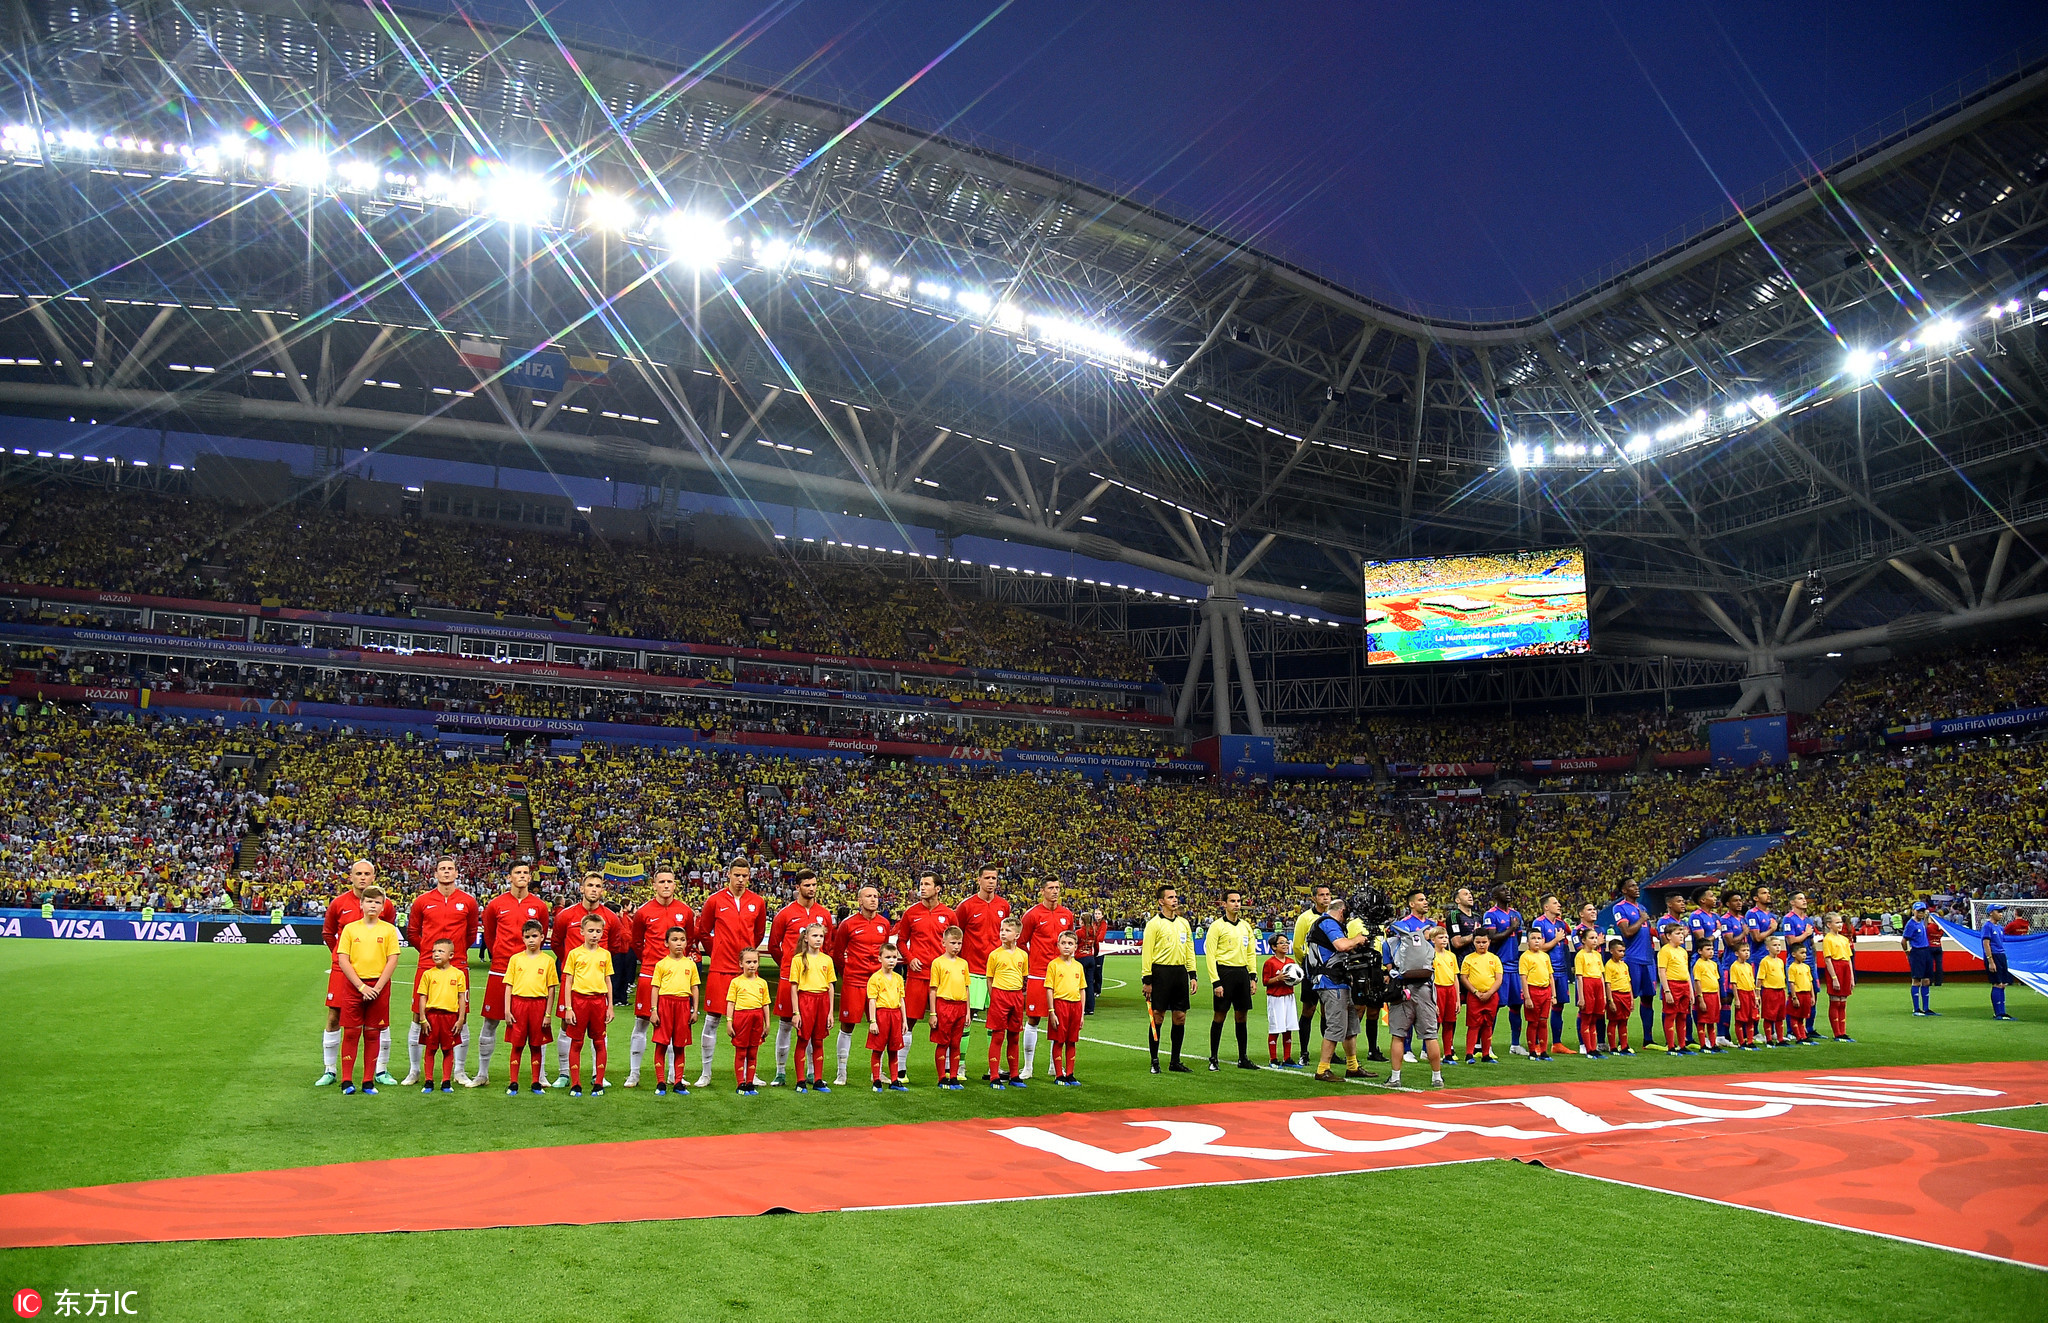 人满蔚美 图看俄罗斯世界杯12大球场赛时震撼靓景